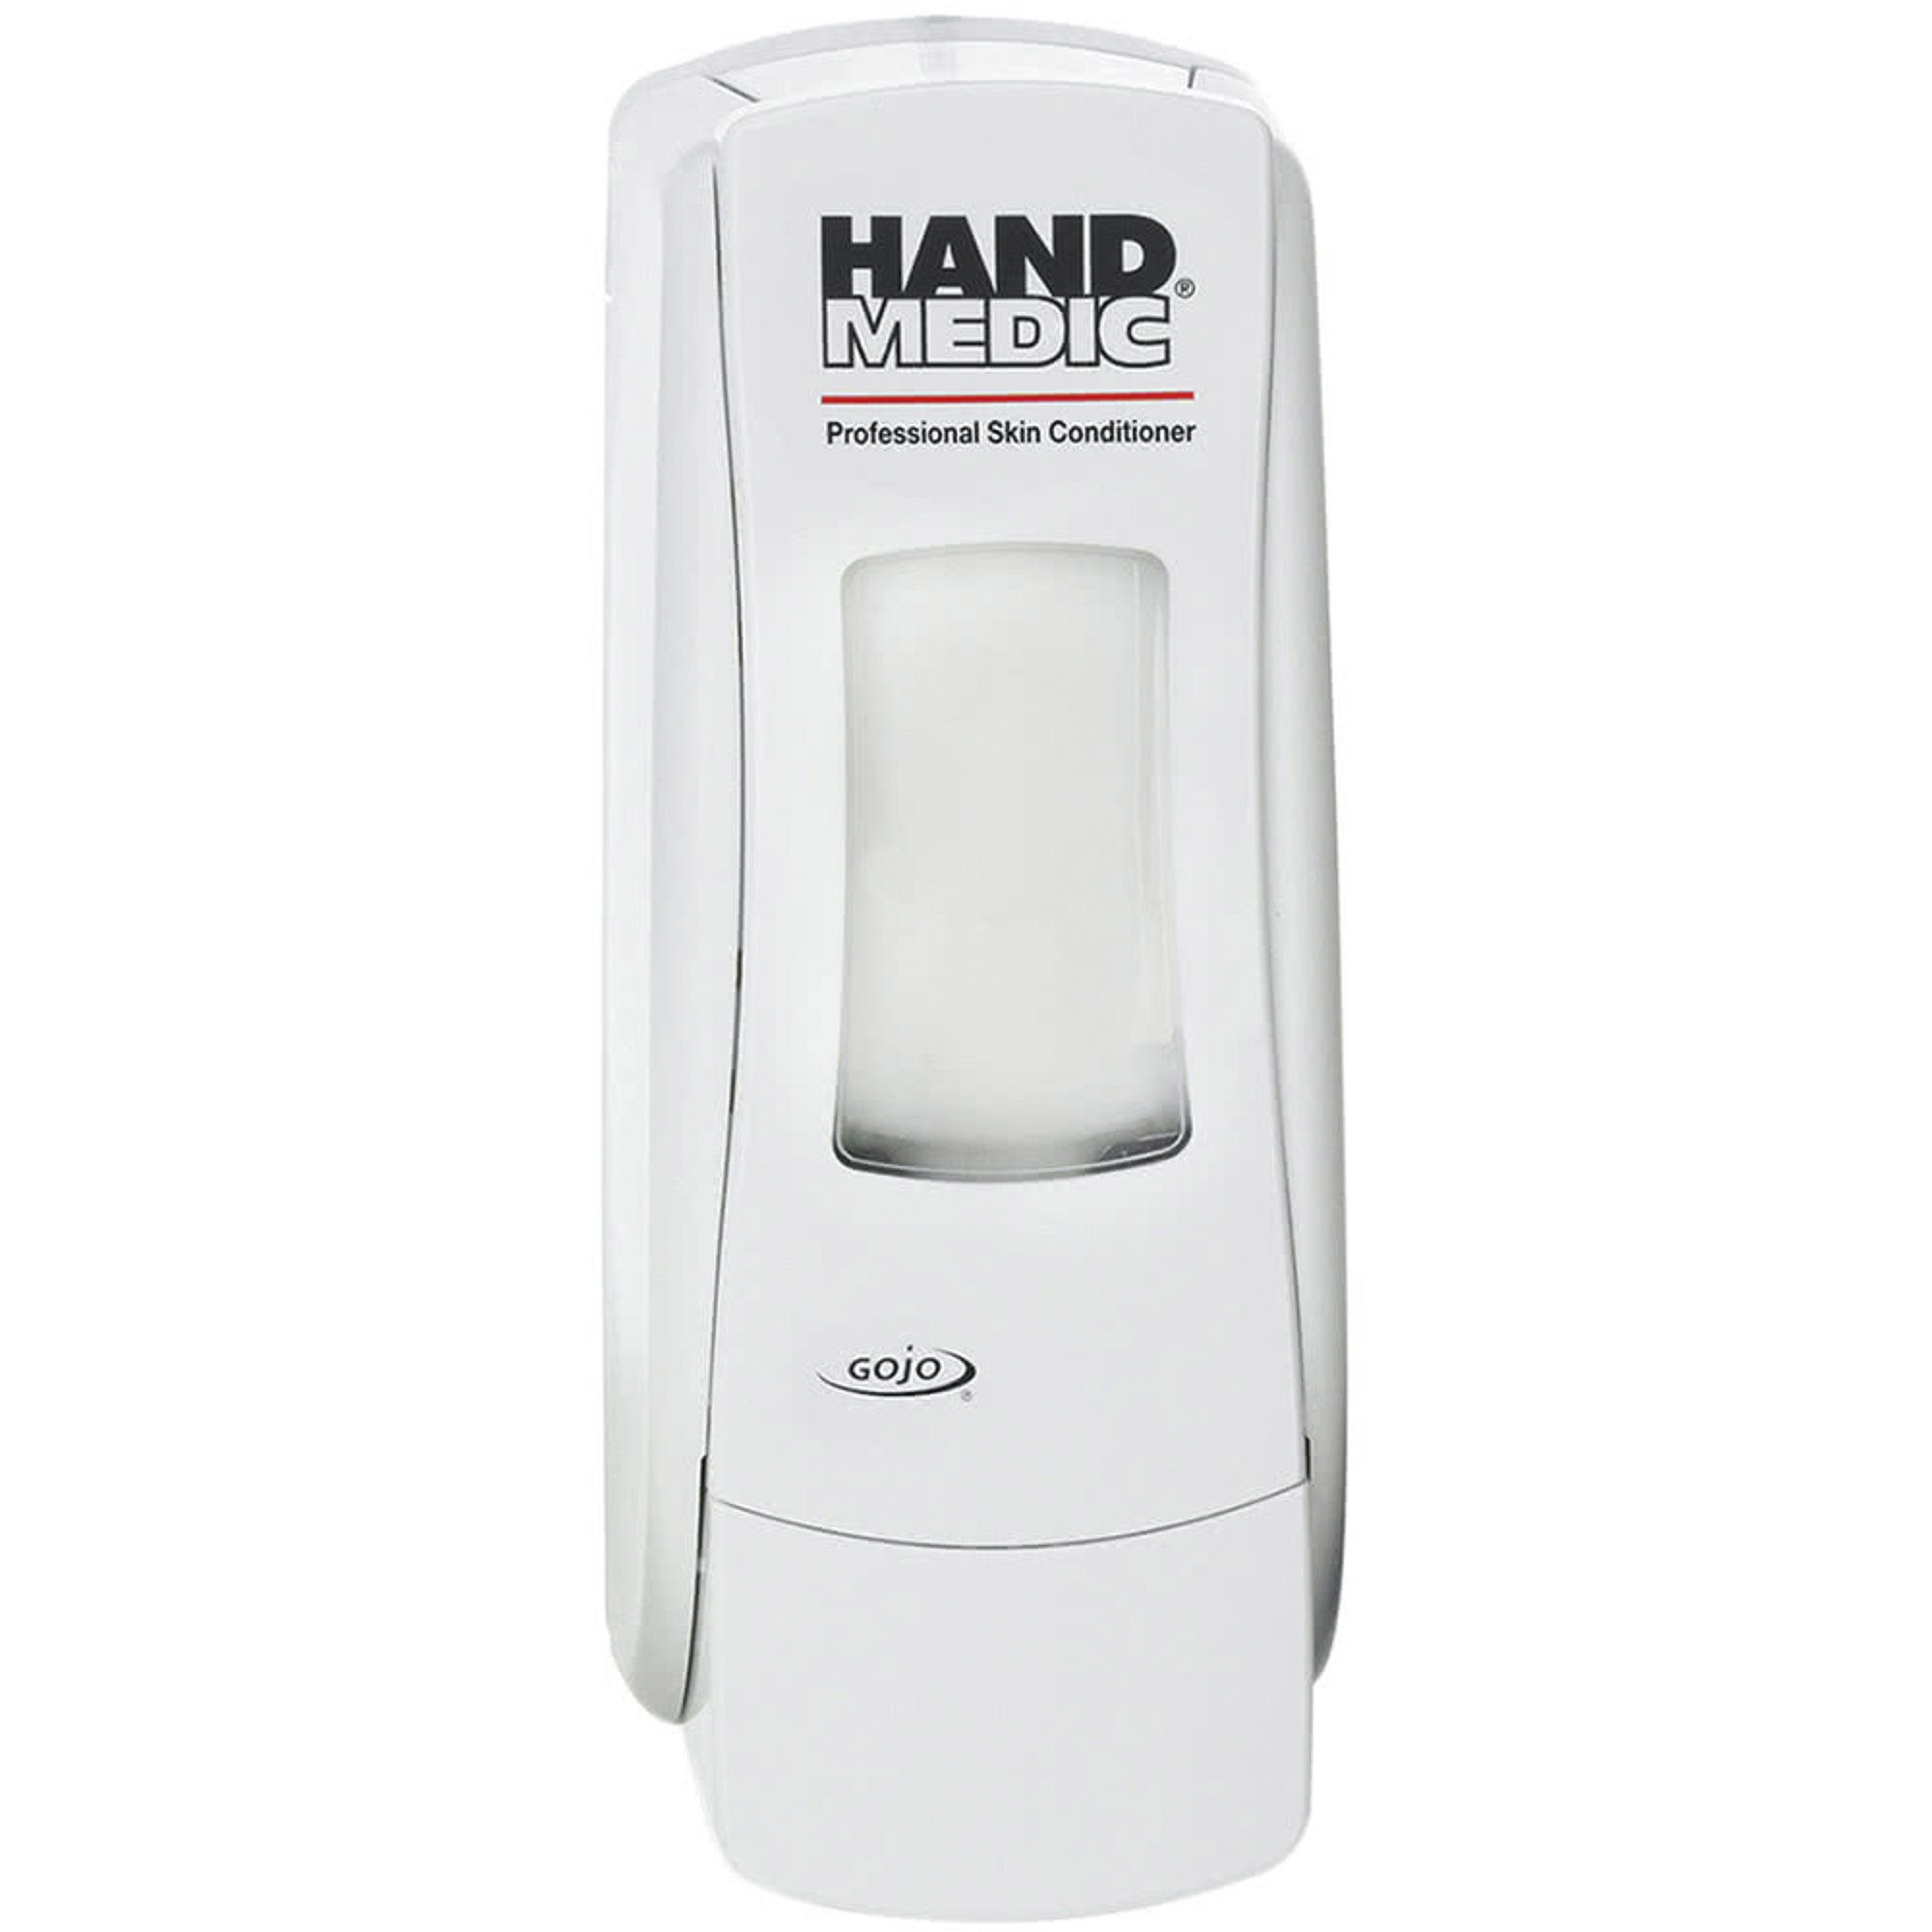 GOJO Hand Medic7500-01 color blanca operación manual ADX-7 dispensador acondicionador de piel